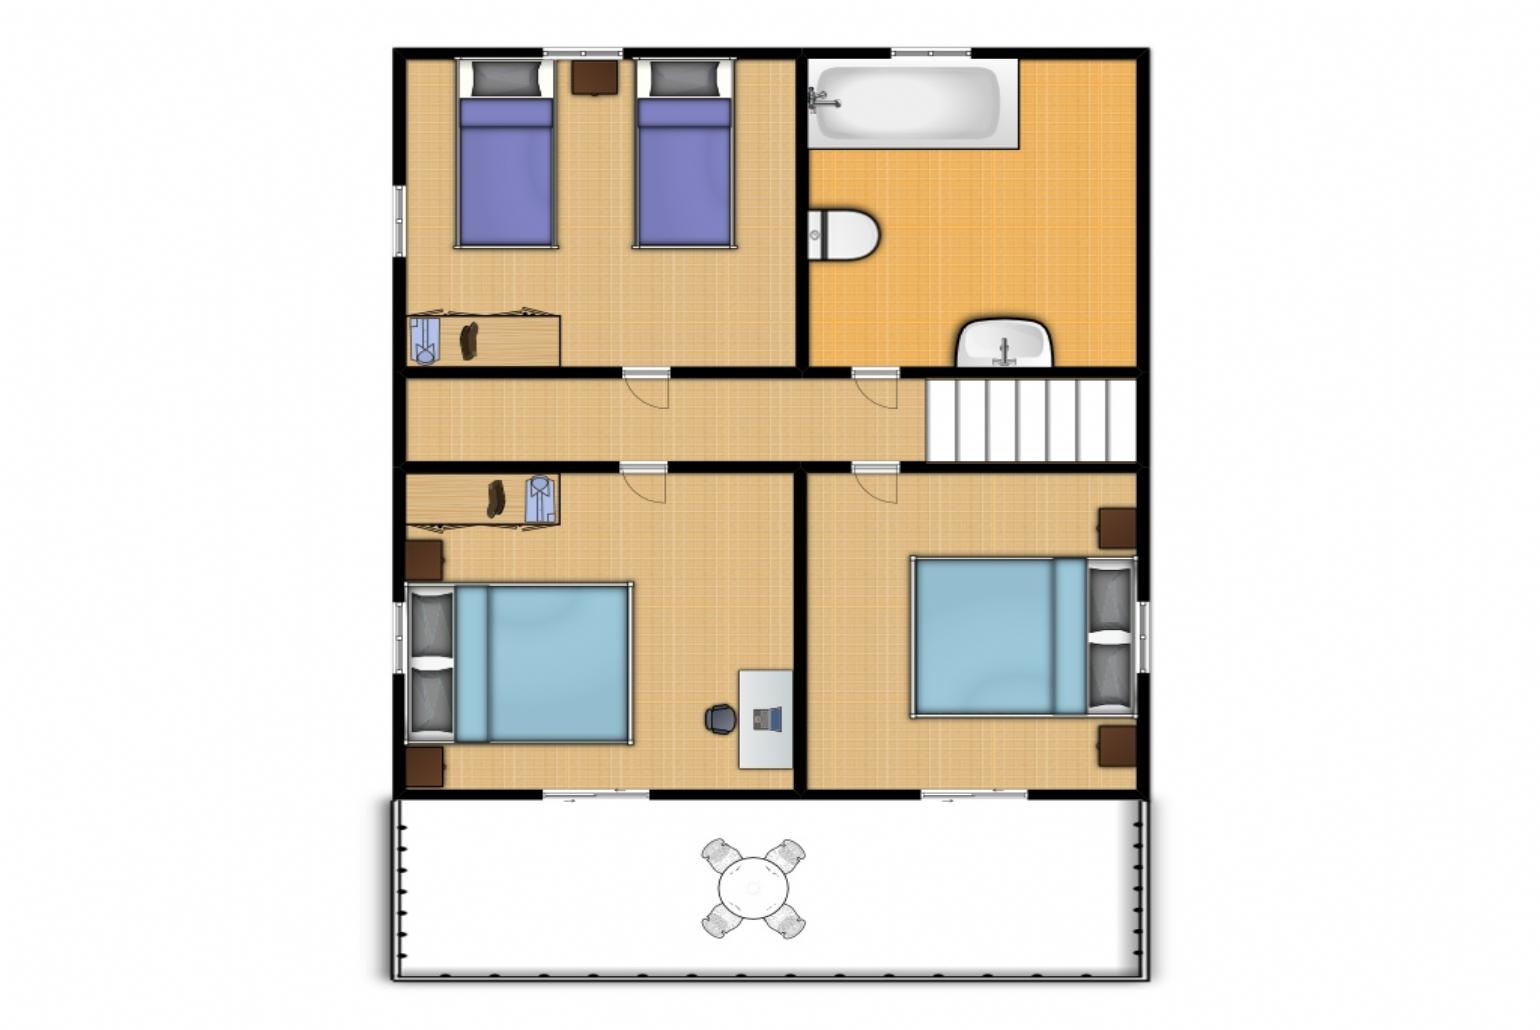 ,Floor Plan: First Floor